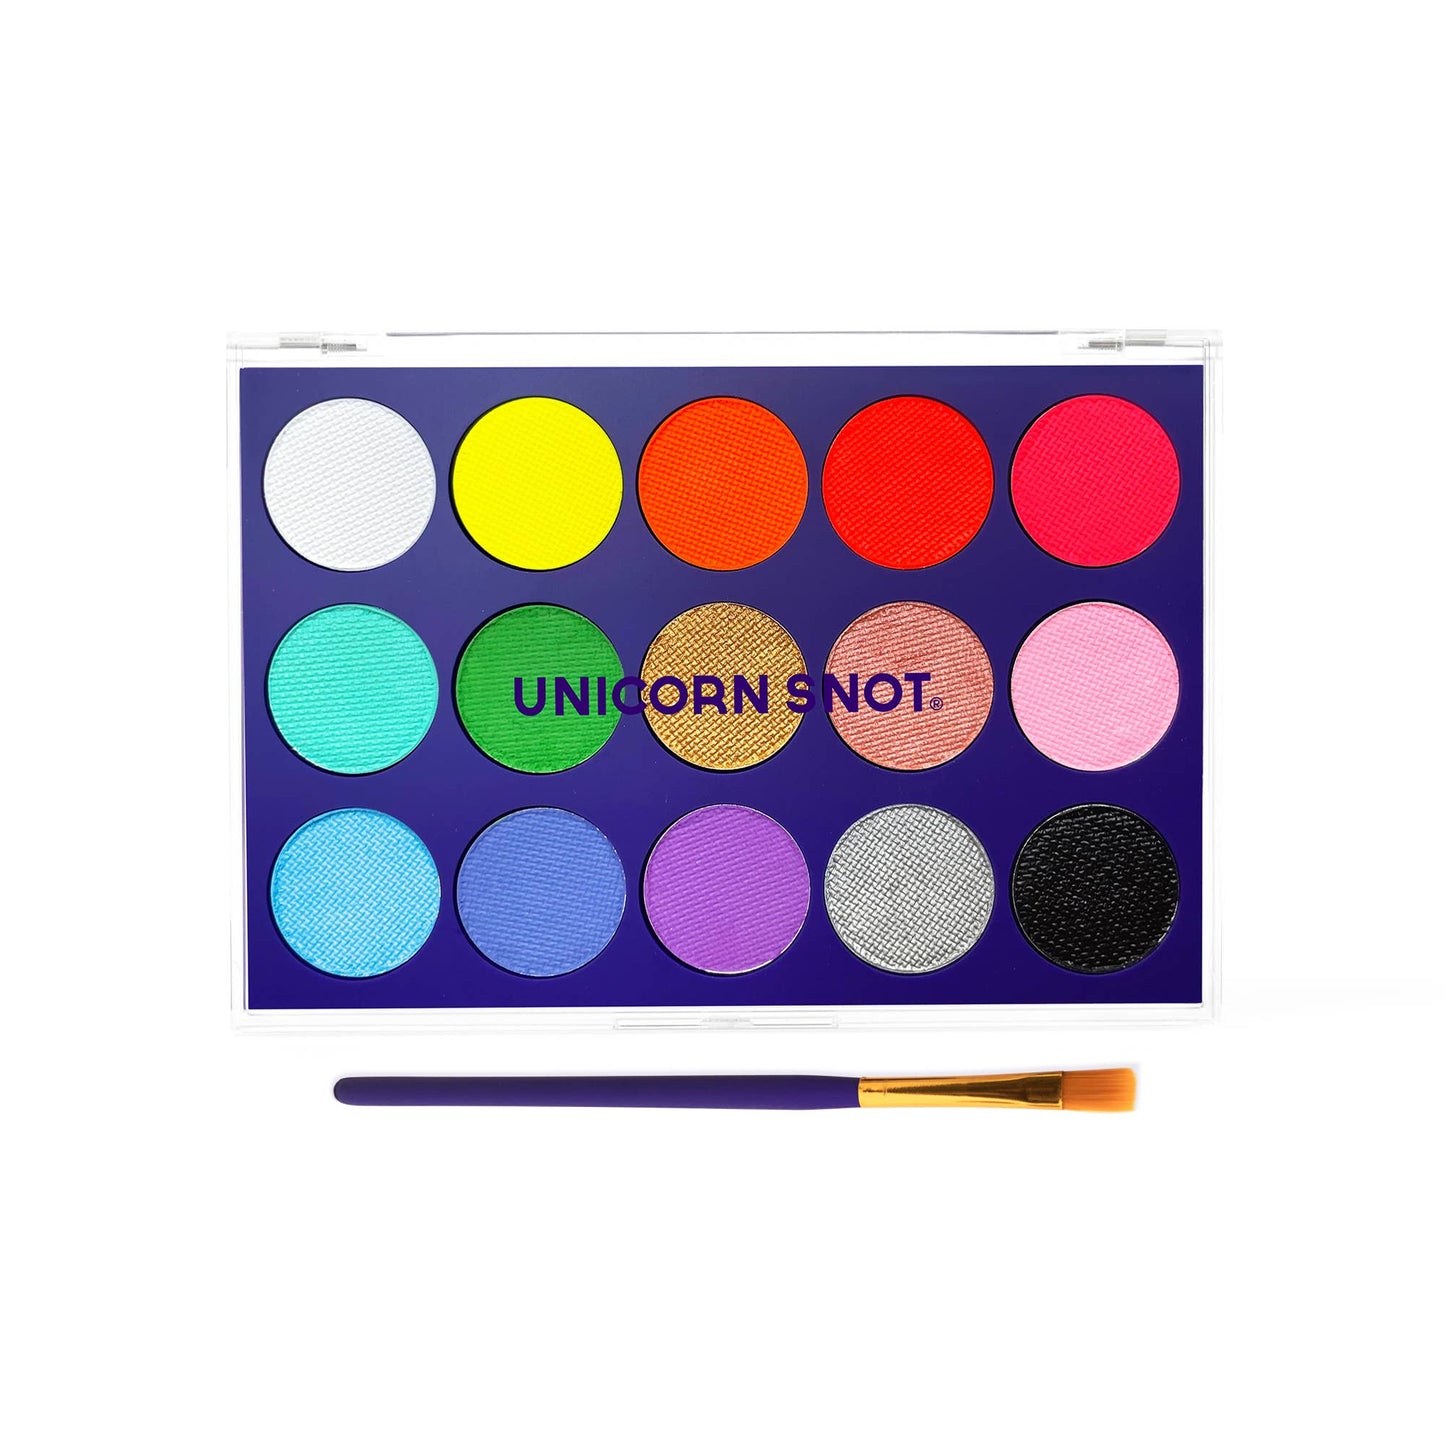 Unicorn Snot - Daypaint - Body Paint Palette, 15 colors